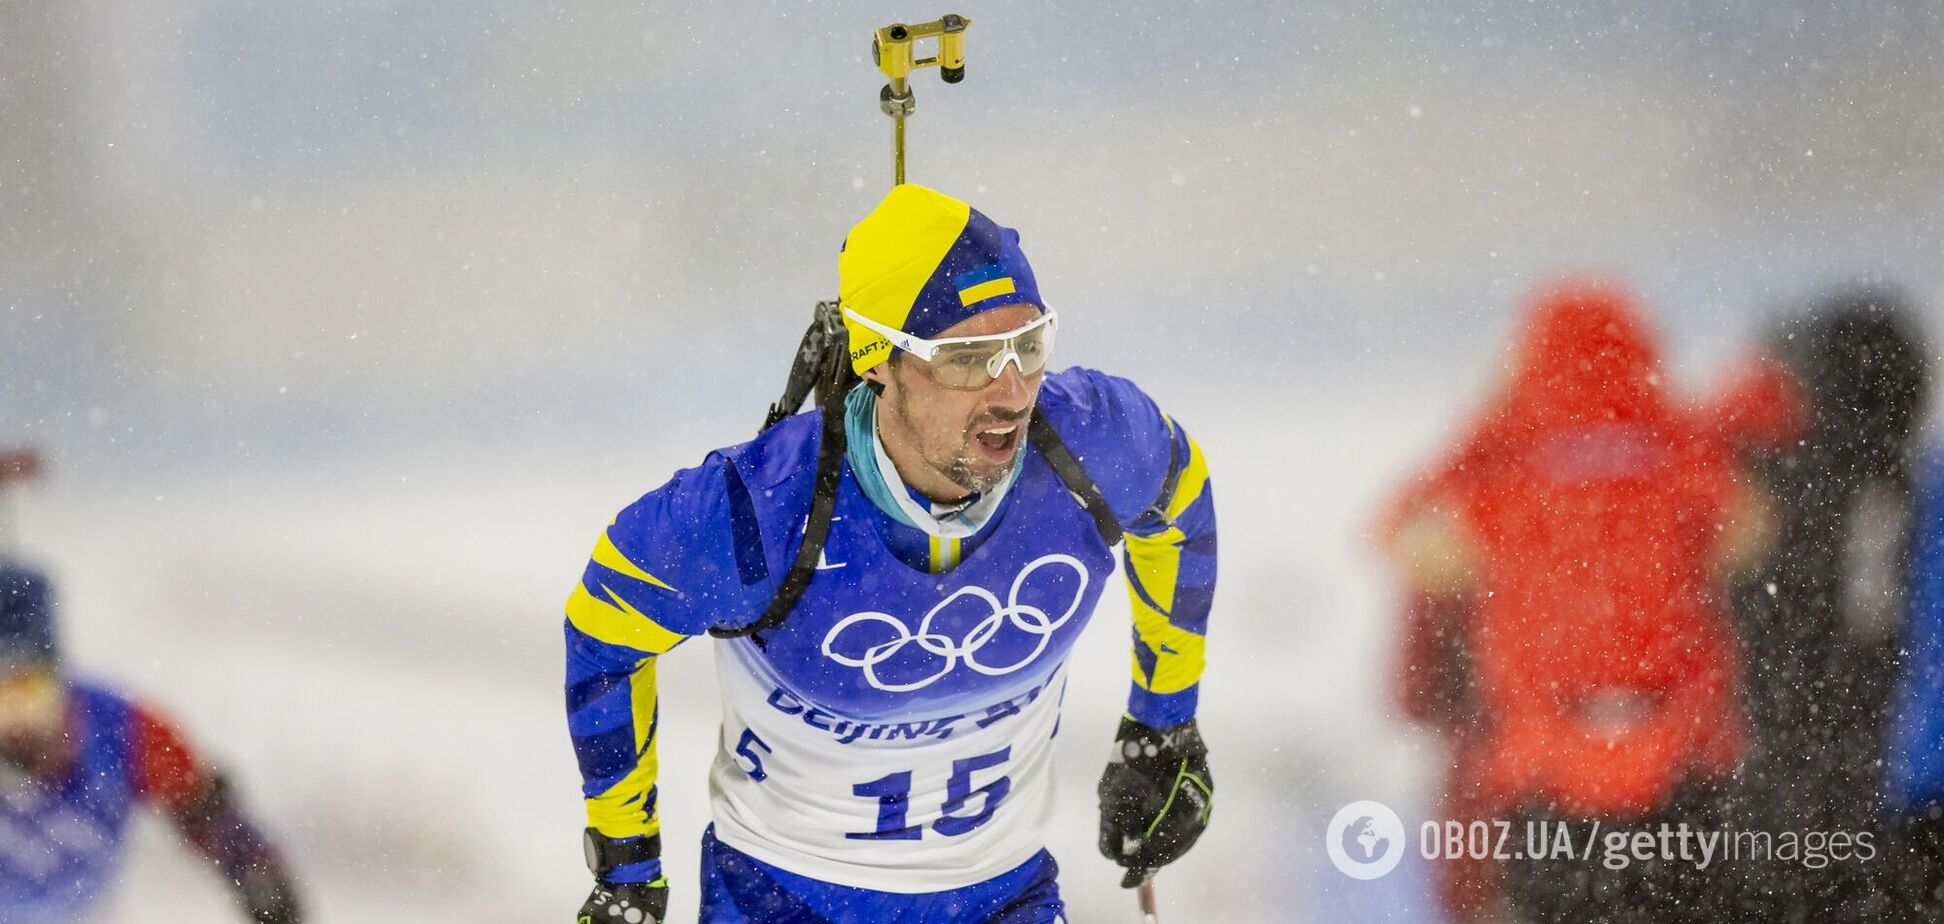 Сталося незрозуміле: український біатлоніст вибачився за погану стрільбу в естафеті Олімпіади